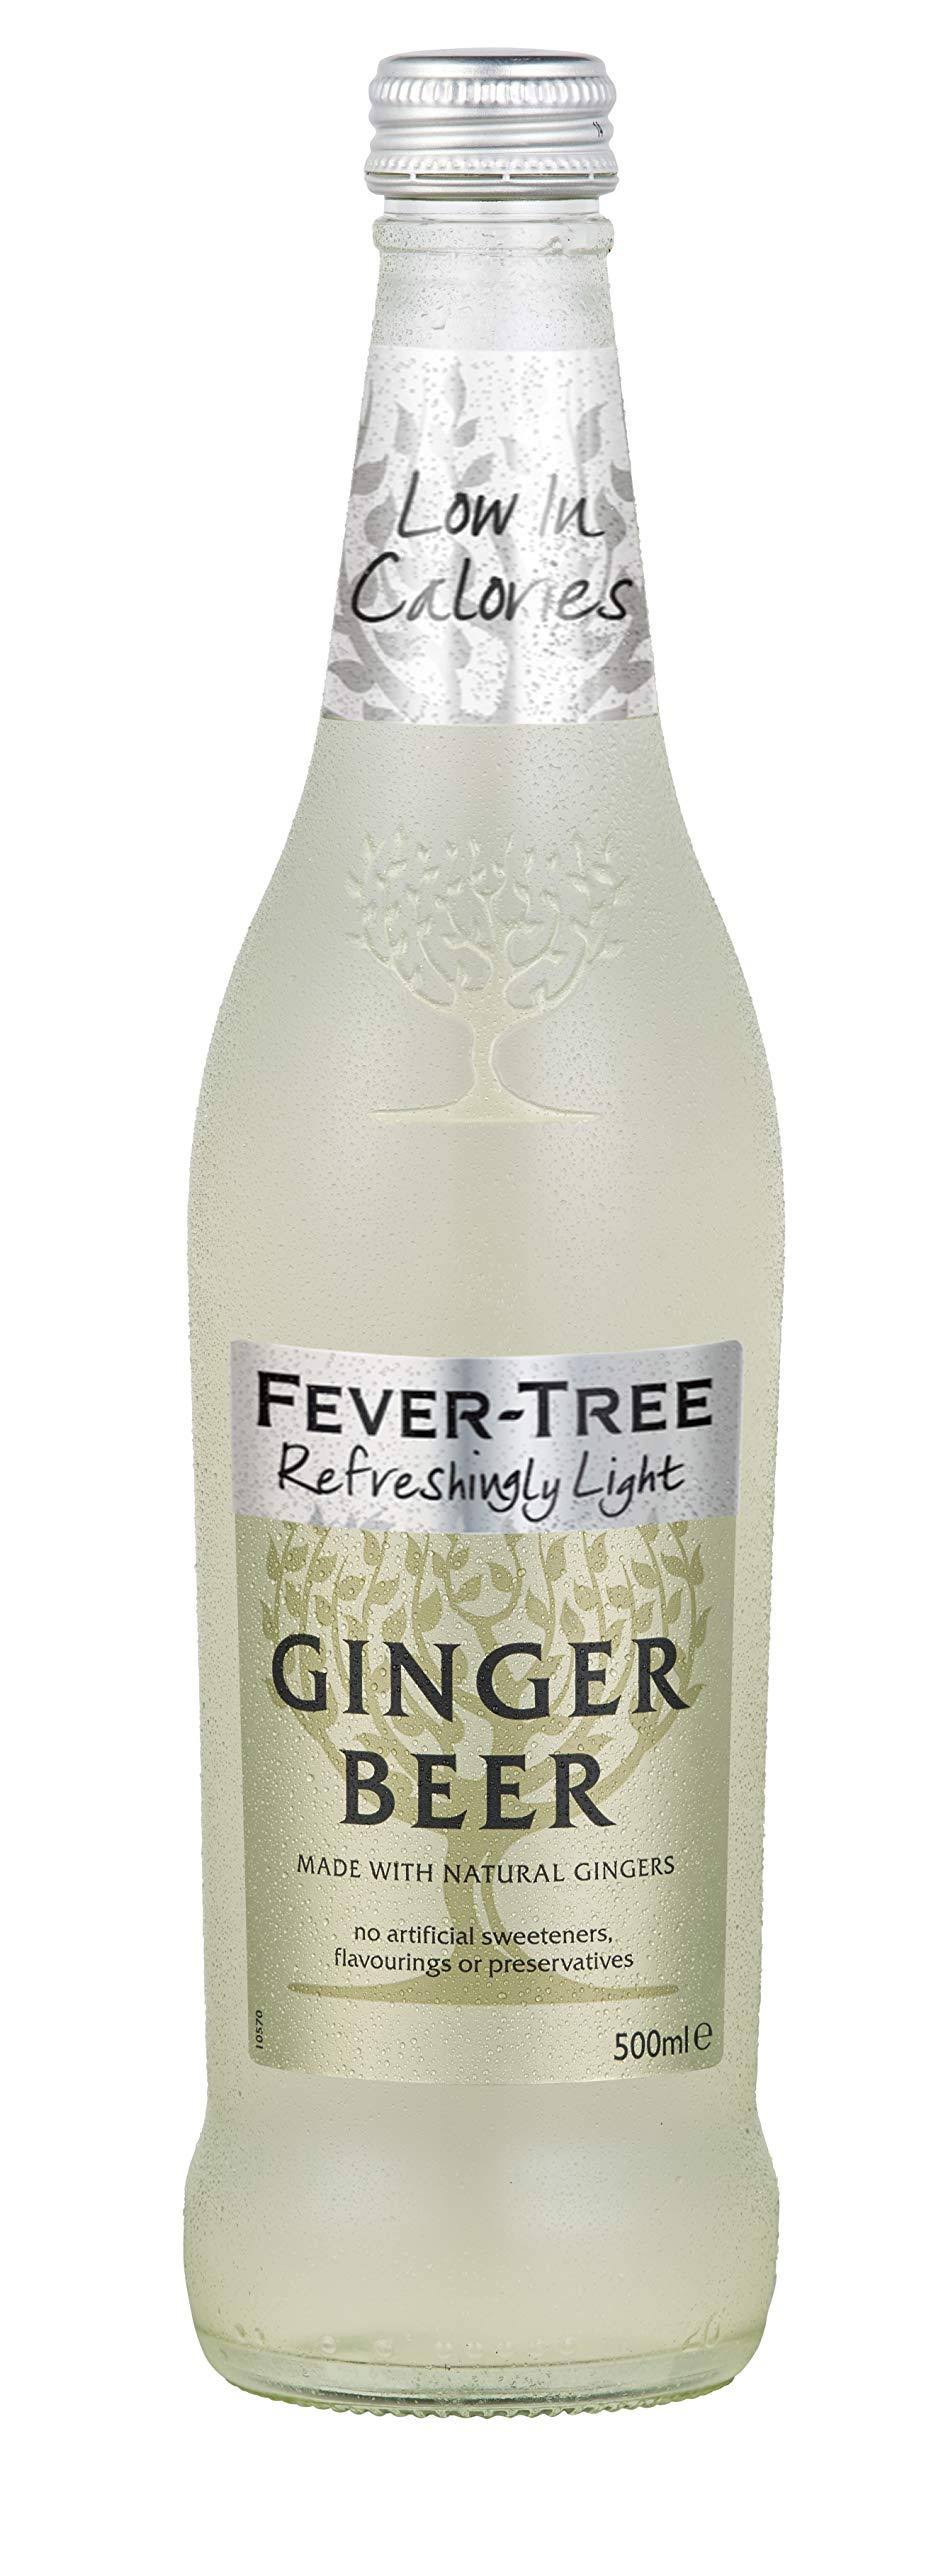 Fever tree Naturally Light Ginger Beer - 16.9oz